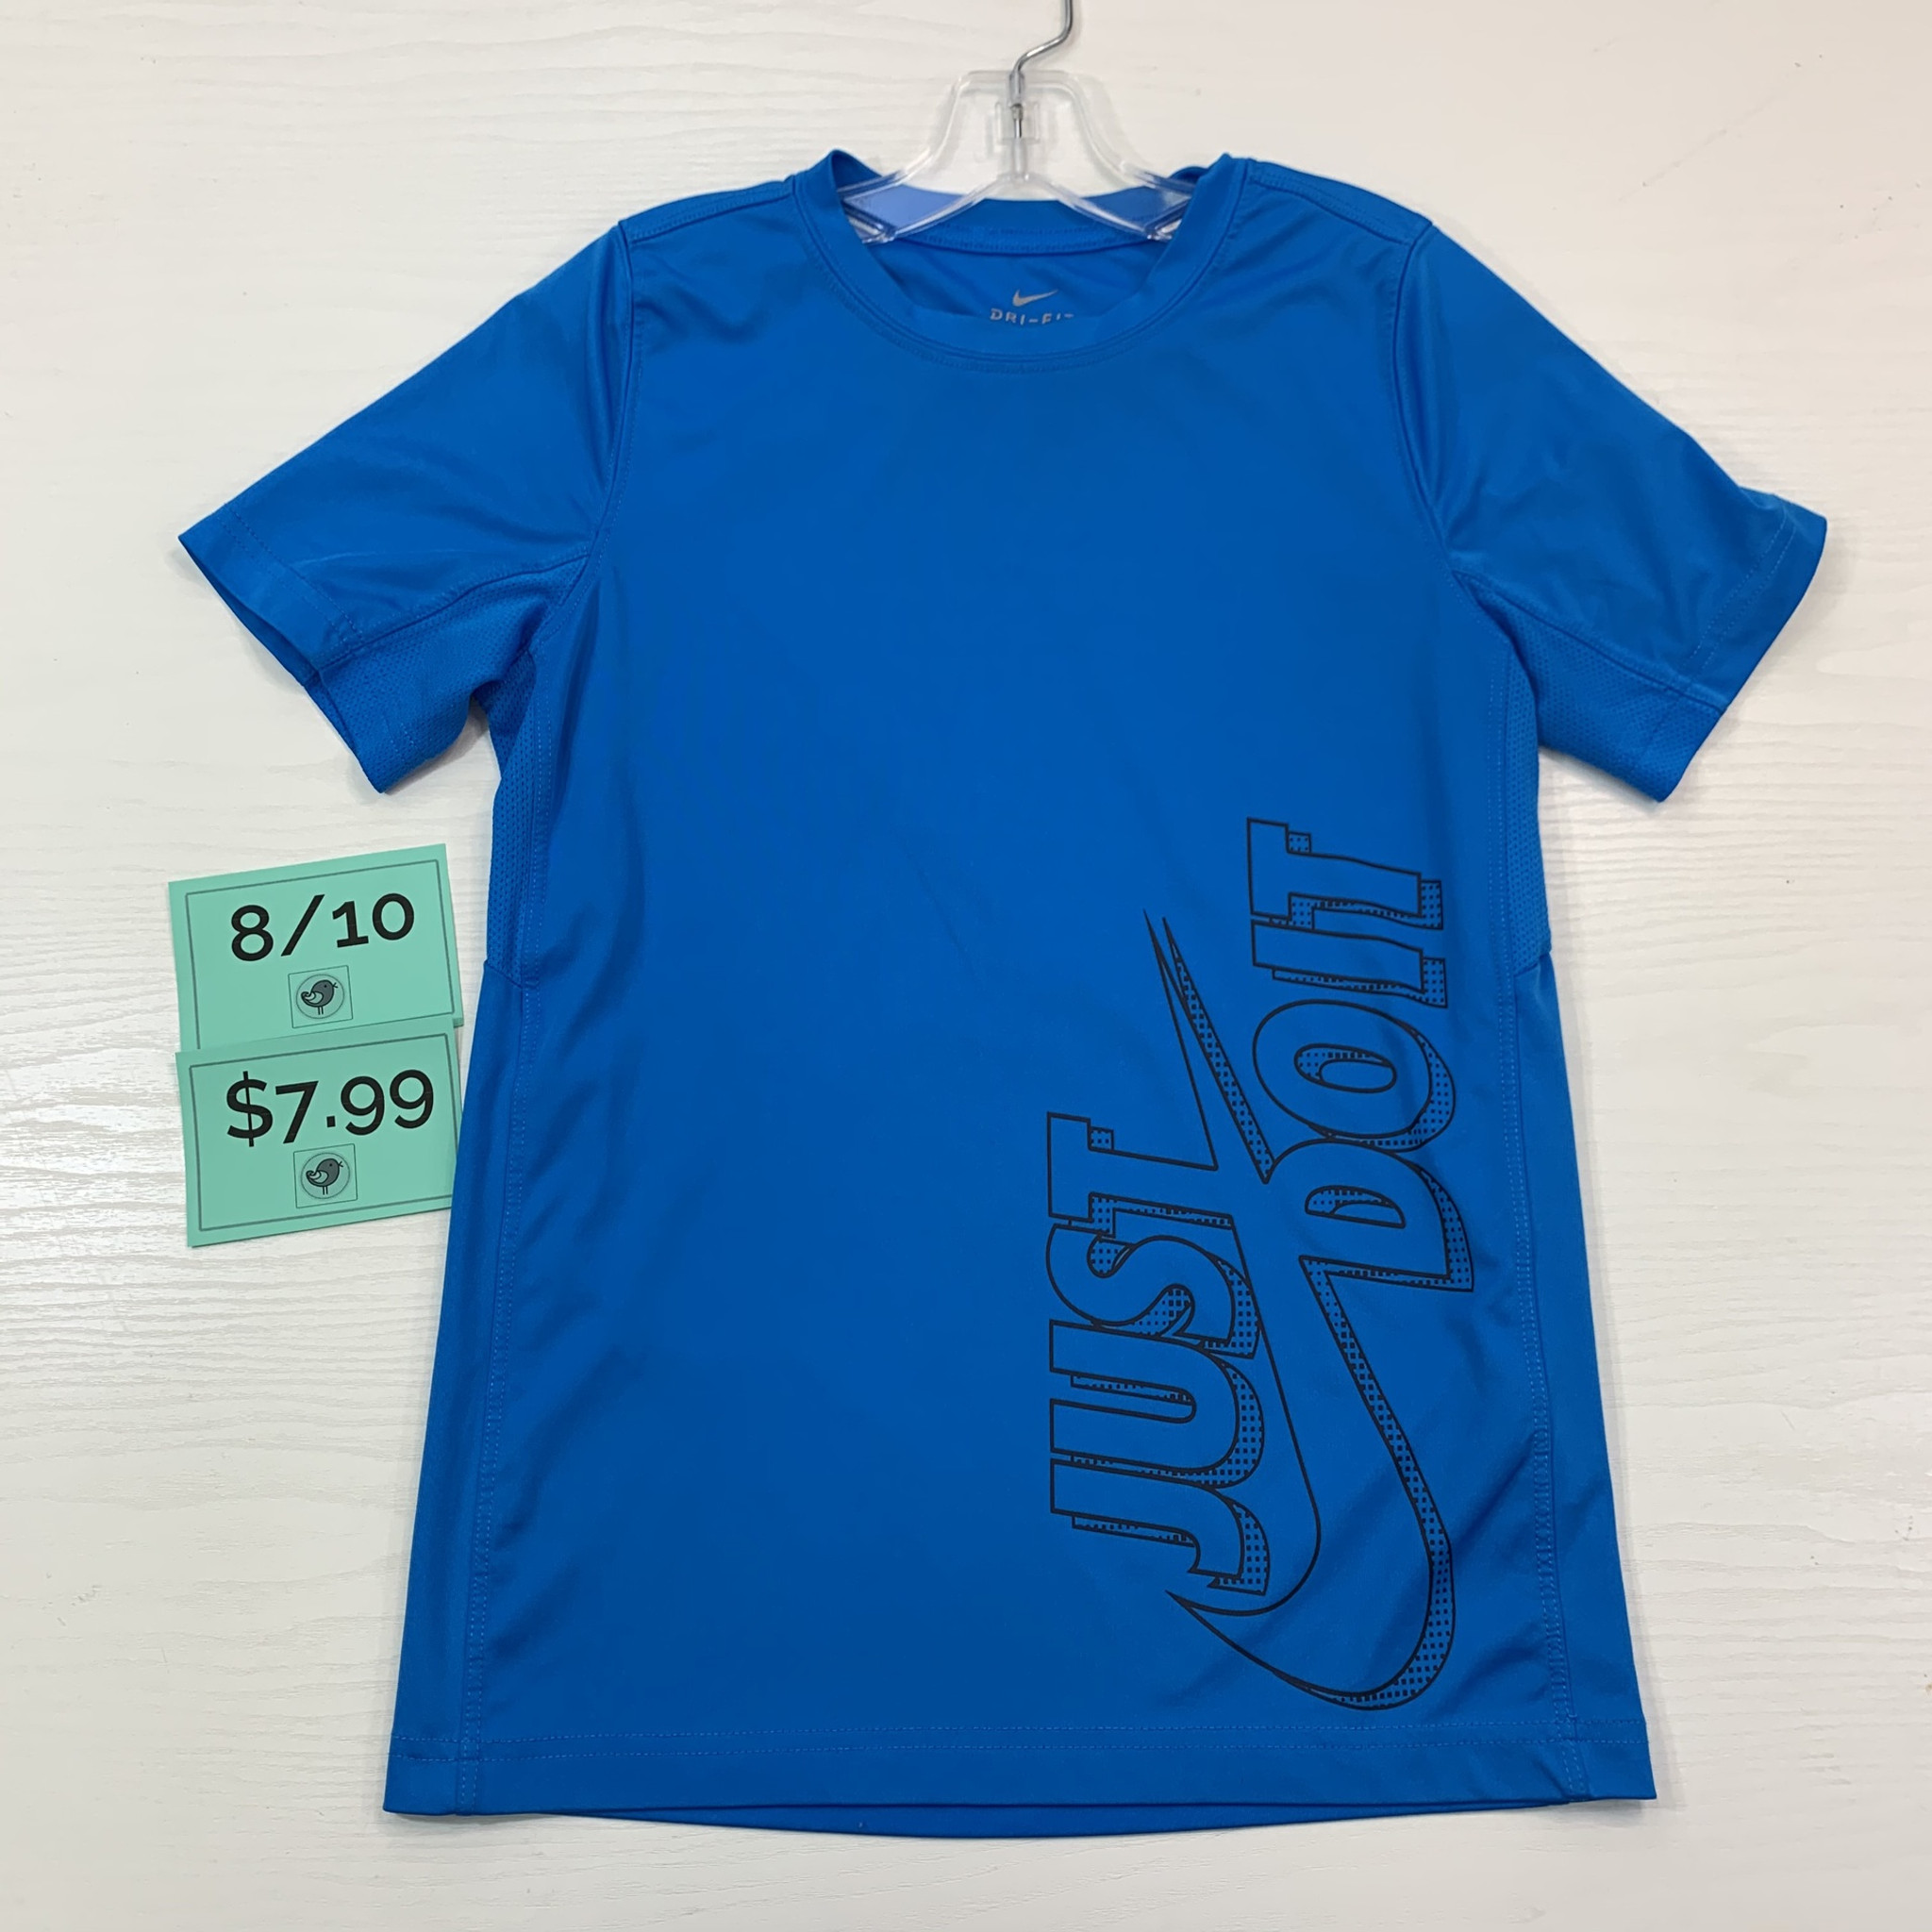 Nike Athletic Shirt Blue 8/10